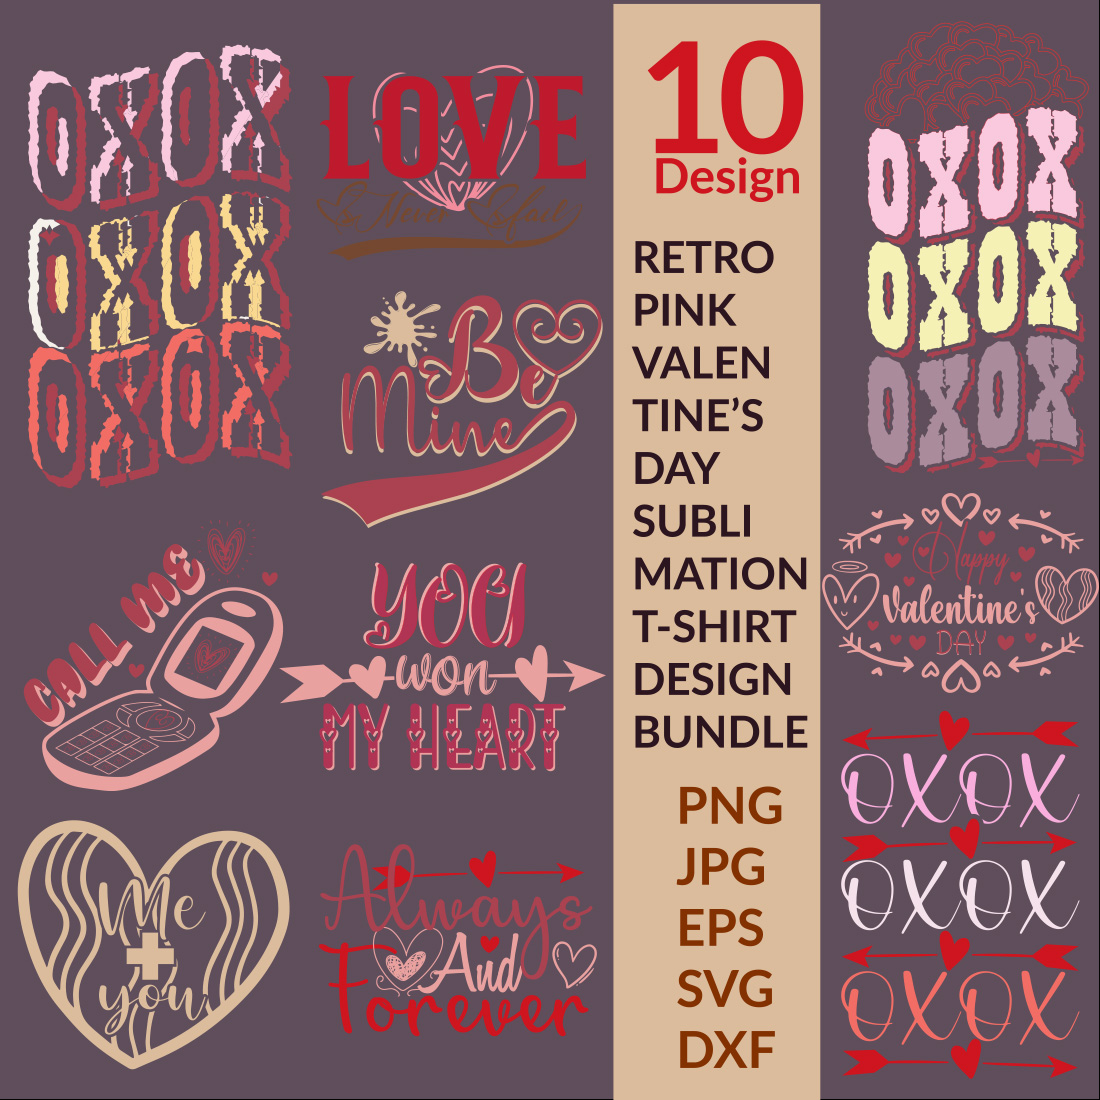 10 Retro Valentine's Day Sublimation T-Shirt Design Bundle 02 cover image.